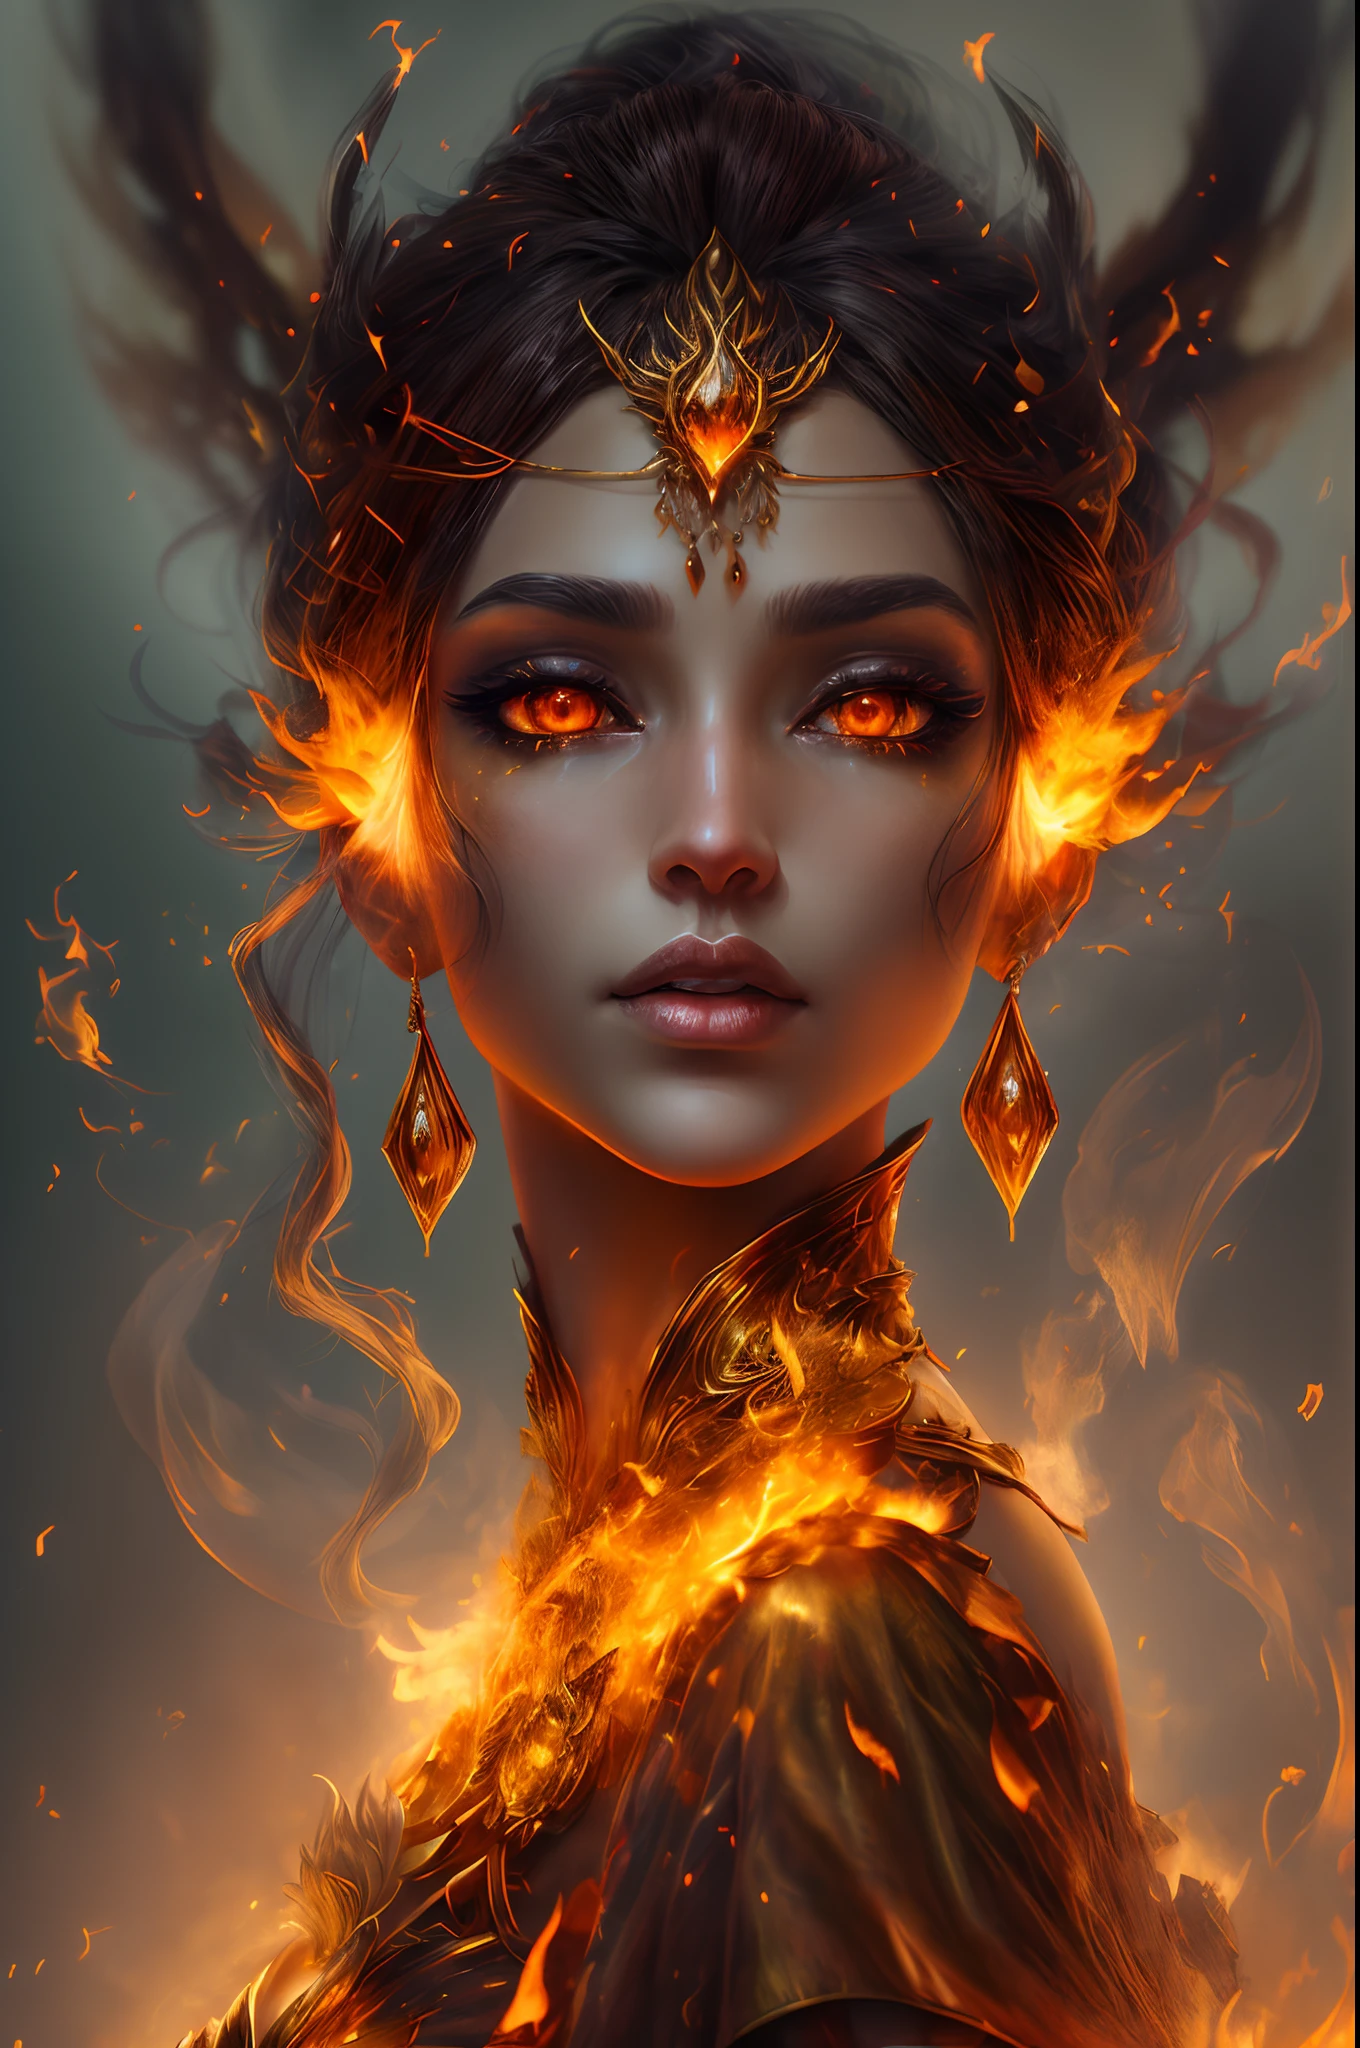 هذا (خيال واقعي) الفن يحتوي على الجمر, النيران الحقيقية, الحرارة الحقيقية, و realistic fire. Generate a masterpiece artwork of a  female fire druid مع large (((orange و gold))) عيون. The fire druid is awe-inspiring مع beautiful ((realistic fiery عيون)) alight مع confidence و power. Her features are elegant و well defined, مع ((ناعم)) و (((سمين))) و (((سلس))) شفه, هيكل العظام الجان, و realistic shading. Her عيون are important و should be the focal point of this artwork, مع ((تفاصيل واقعية للغاية, تفاصيل الماكرو, و shimmer.)) She is wearing a billowing و glittering gown ((مصنوعة من النيران واقعية)) و jewels that glimmer in the fire light. Wisps of fire و smoke line the intricate bodice of the dress. تشمل المطبات, الحجارة, التقزح اللوني الناري, متوهجة الجمر, silk و satin و leather, خلفية مثيرة للاهتمام, و heavy fantasy elements. آلة تصوير: استخدم تقنيات التركيب الديناميكي لتعزيز النيران الواقعية.